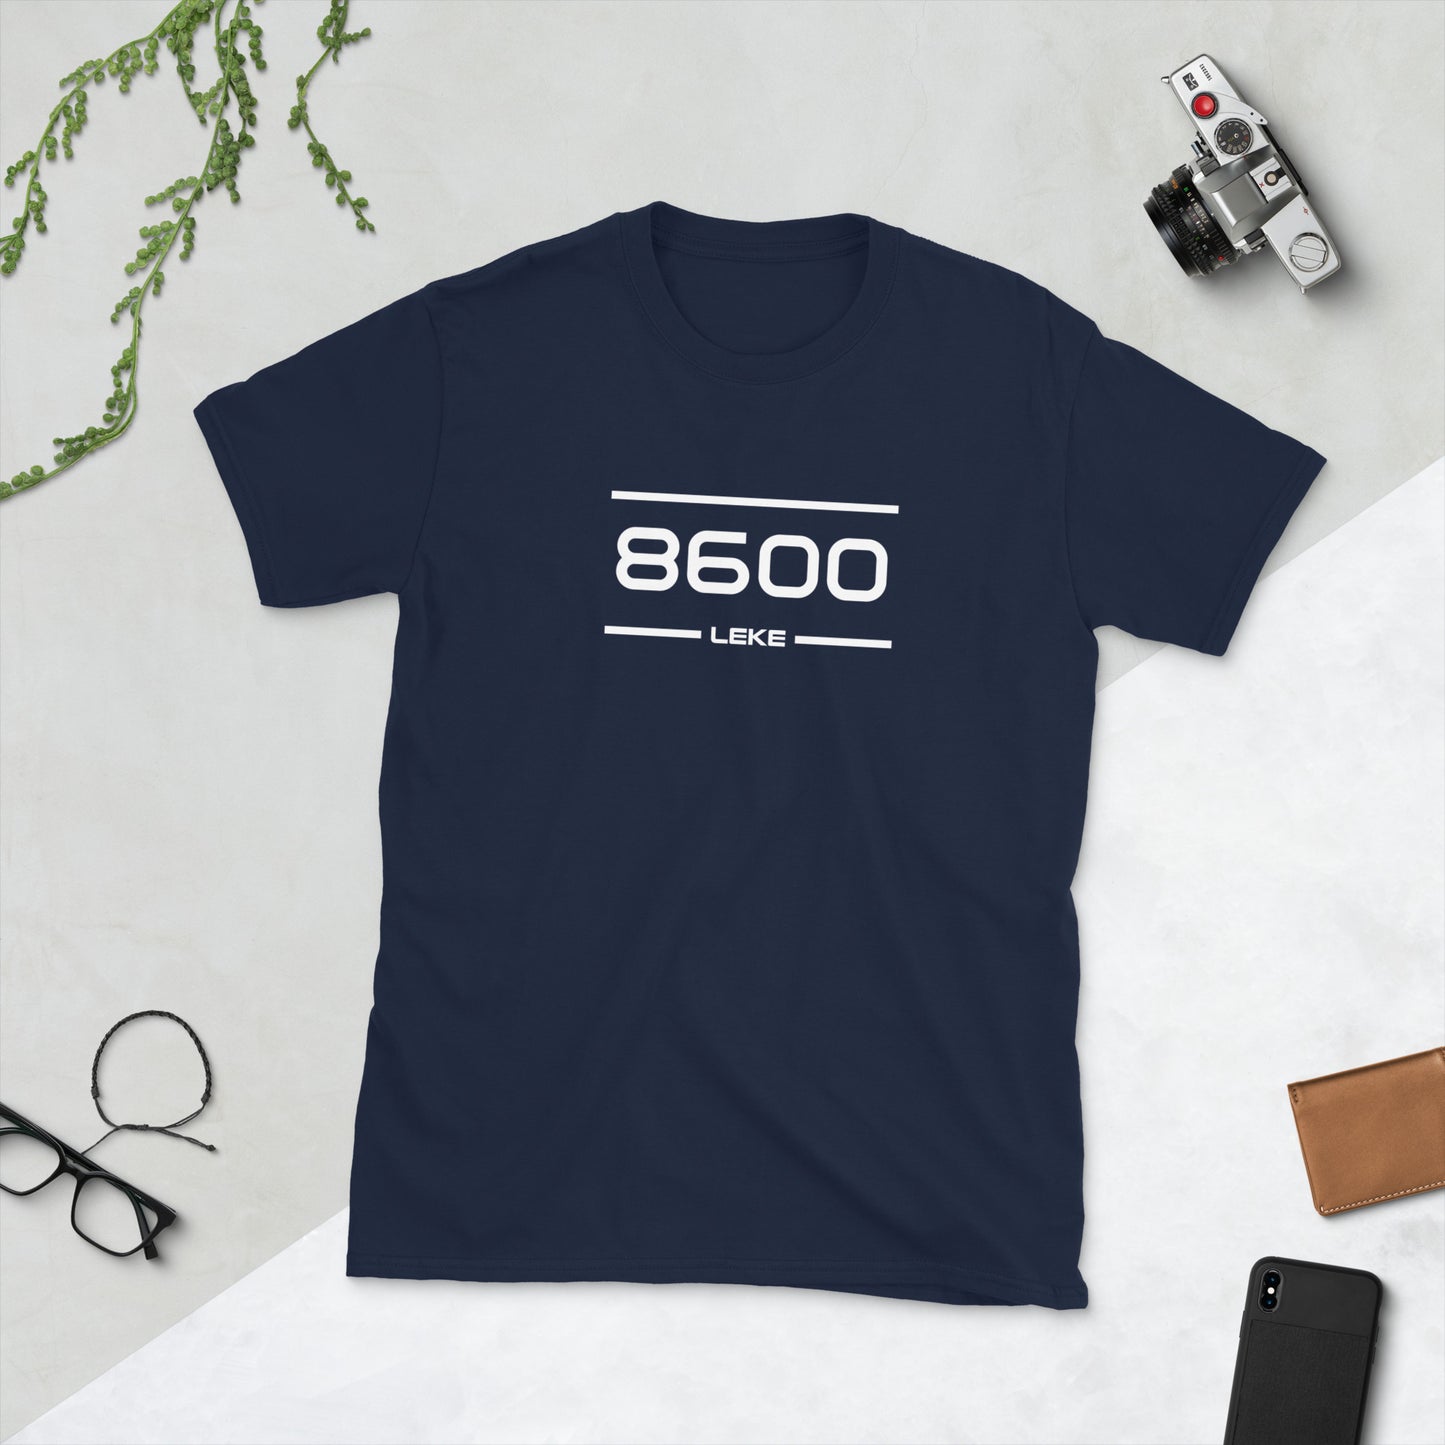 Tshirt - 8600 - Leke